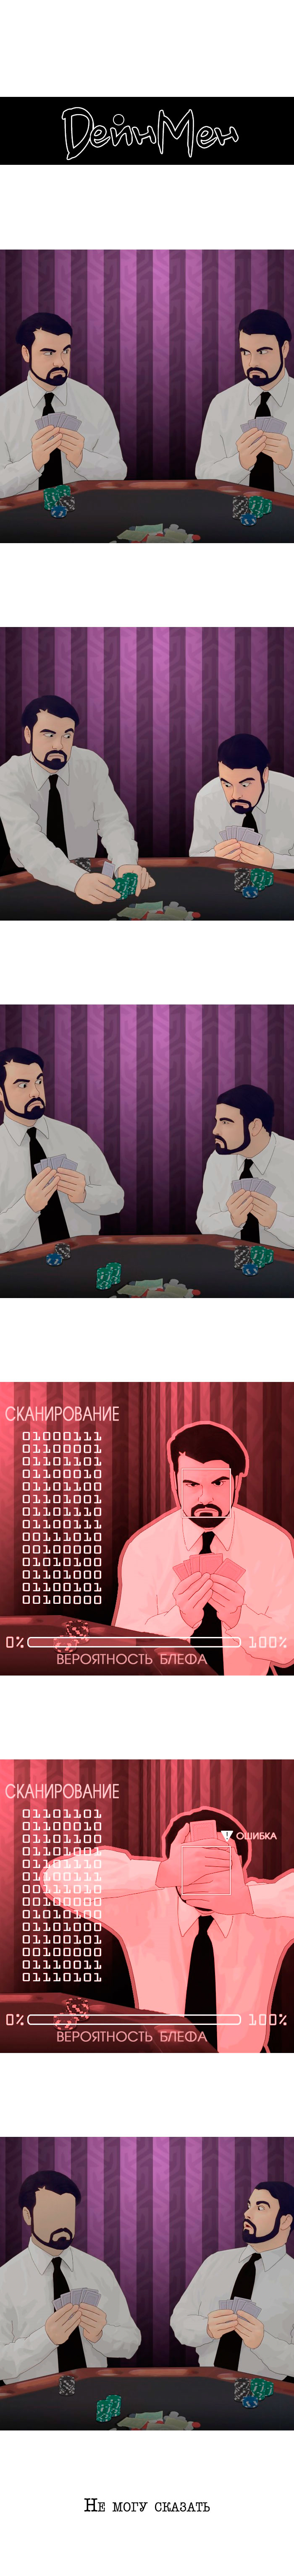 О покере